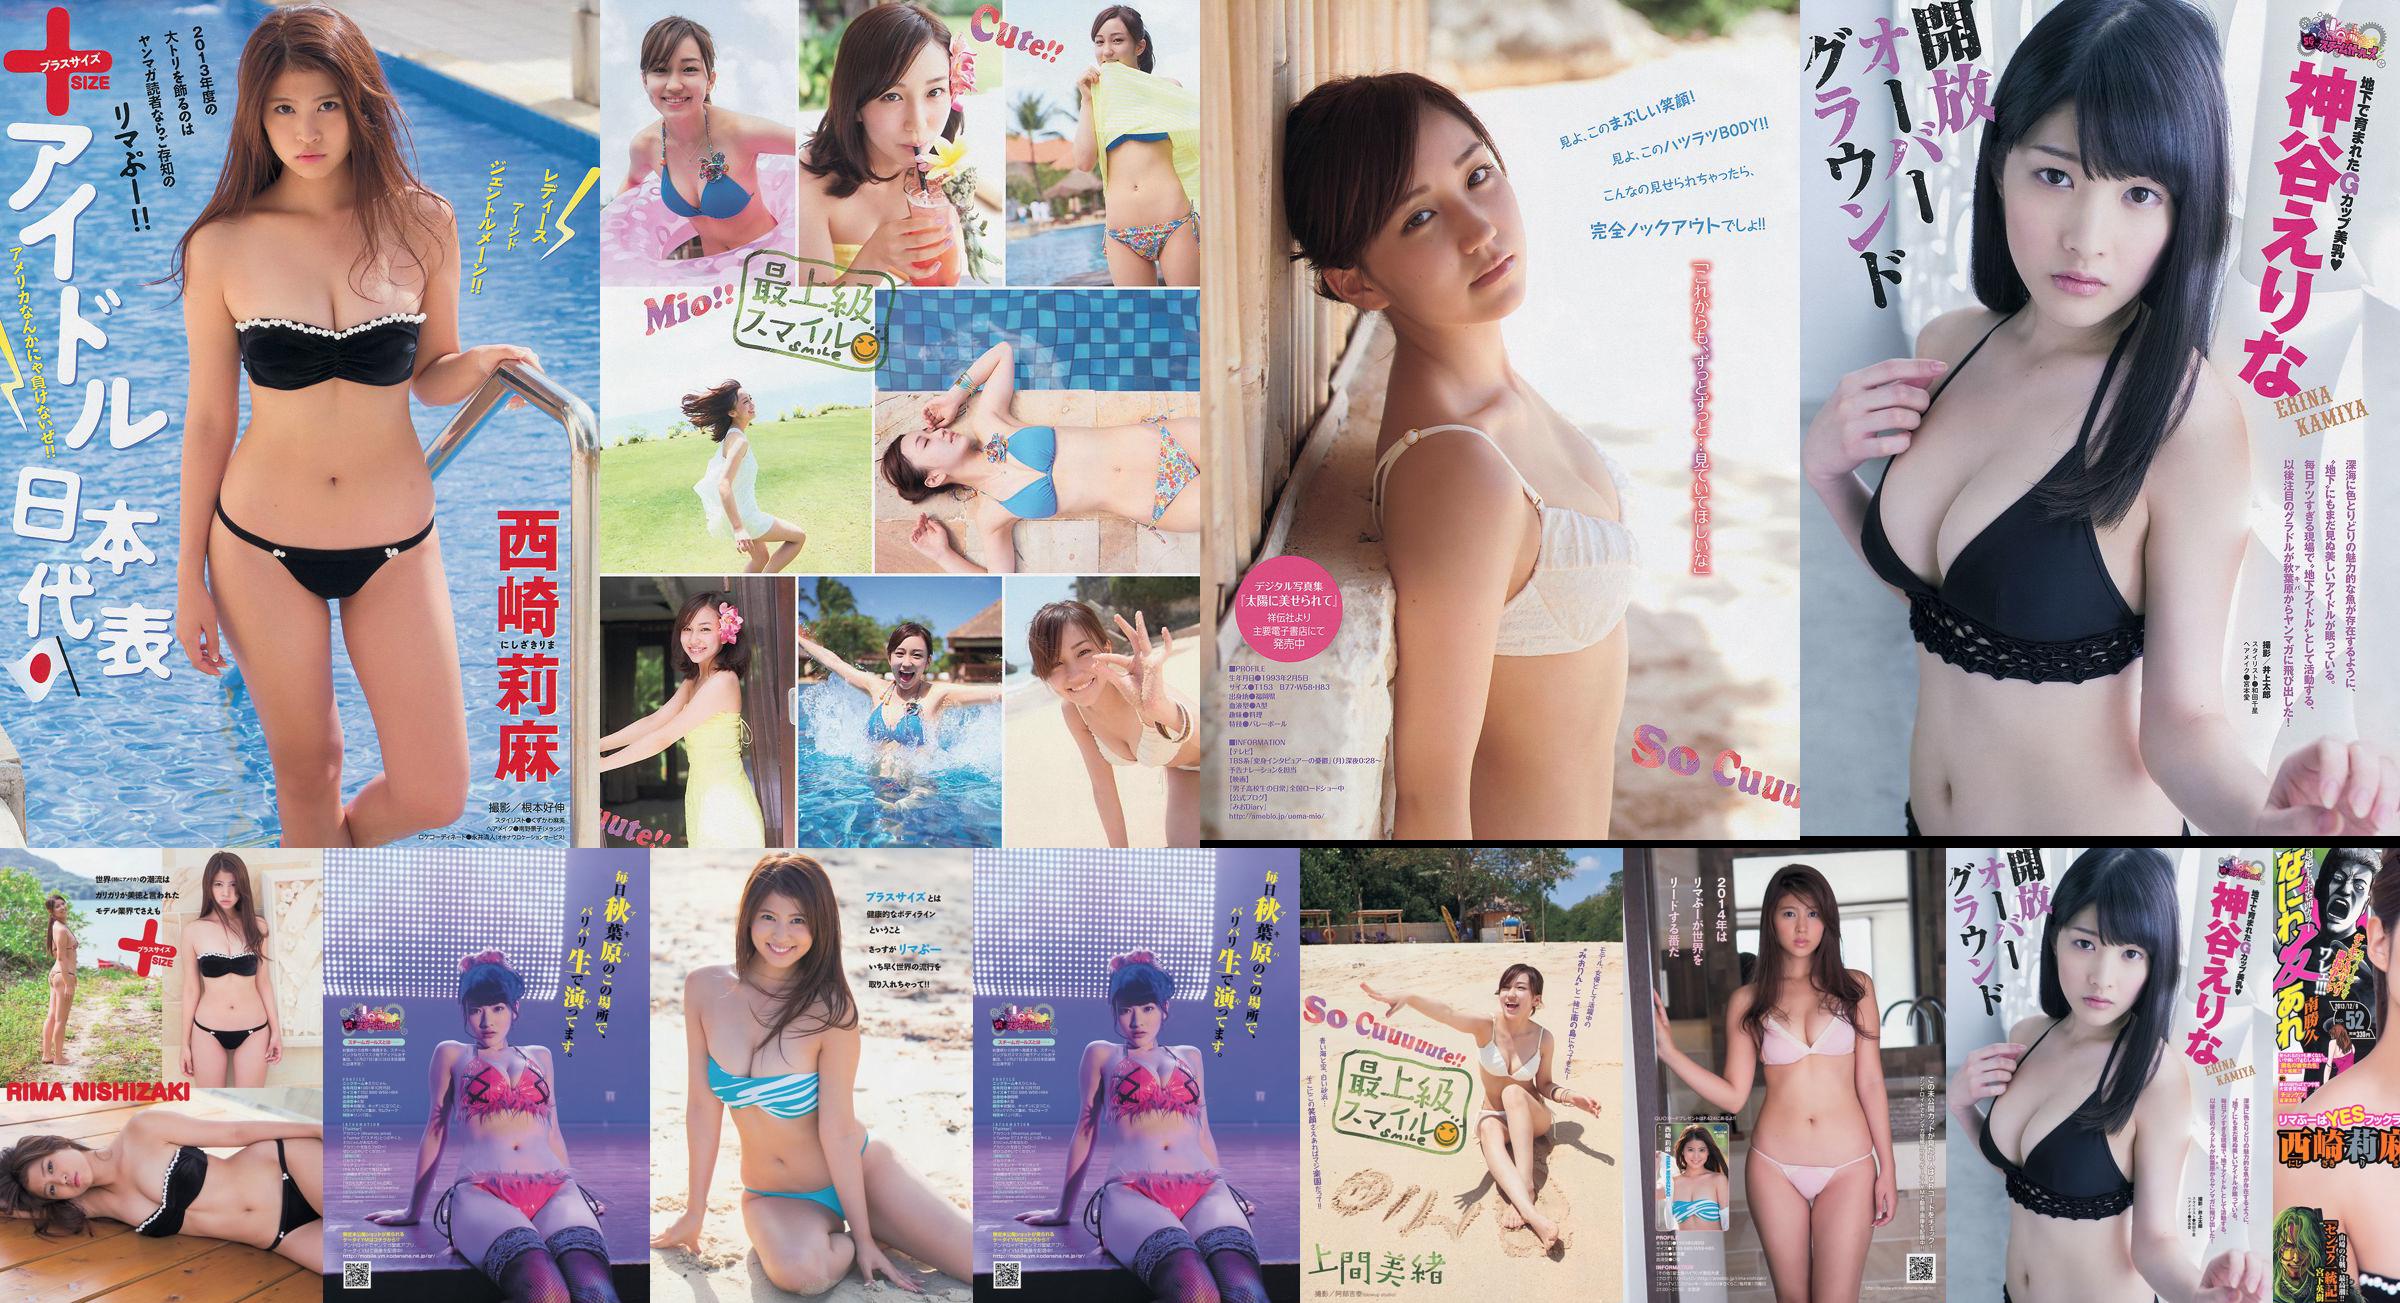 [Young Magazine] Rima Nishizaki Mio Uema Erina Kamiya 2013 No.52 Photo Moshi No.76b455 第1頁